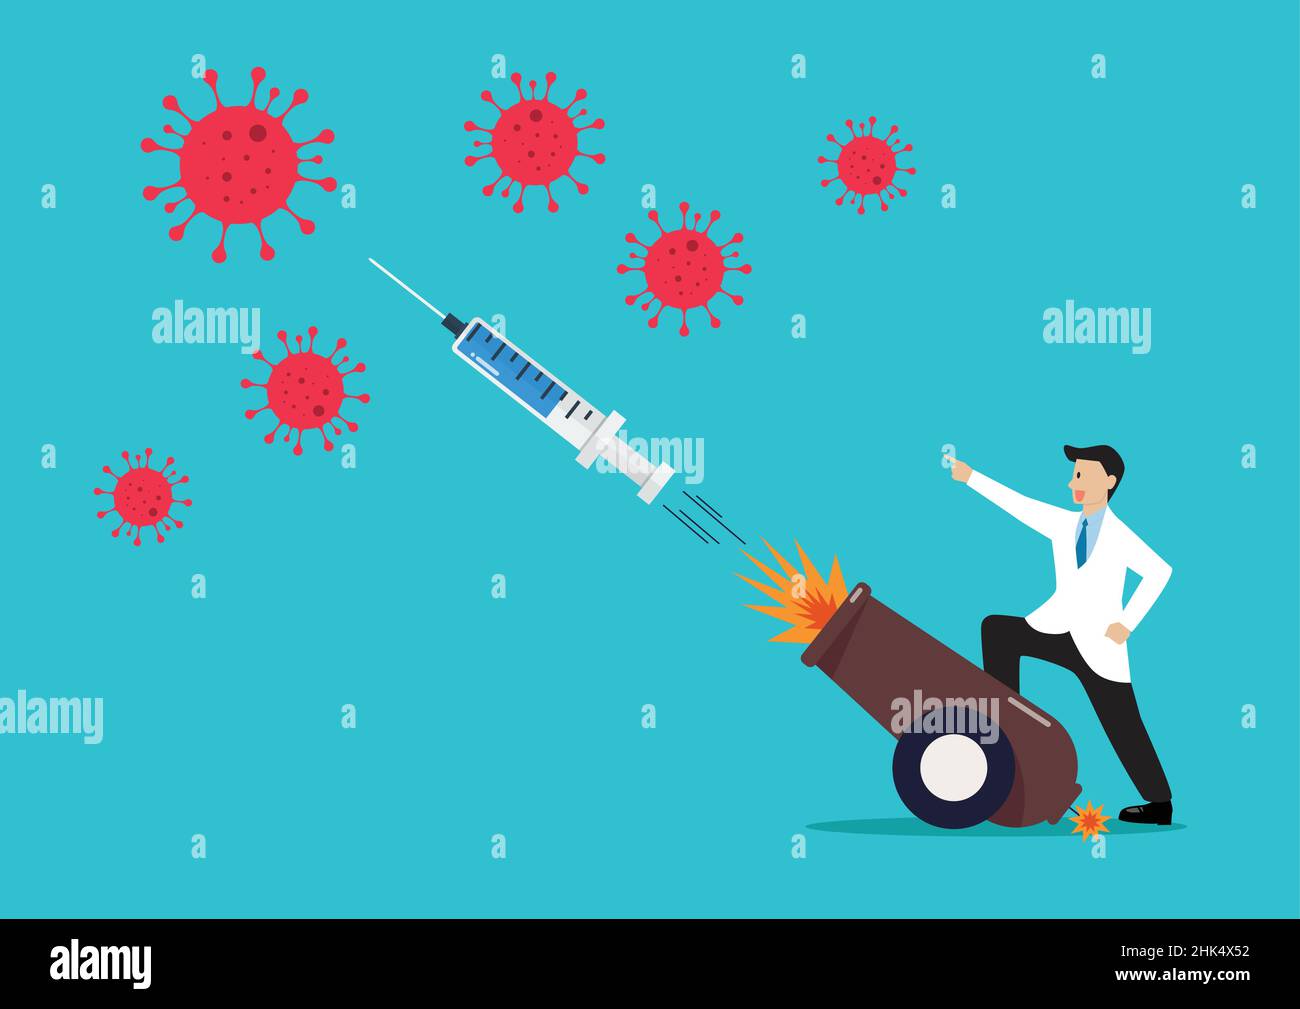 Médecin luttant contre le coronavirus par injection de seringue à partir d'un canon explosif.Illustration vectorielle.Concept de vaccination COVID-19. Illustration de Vecteur